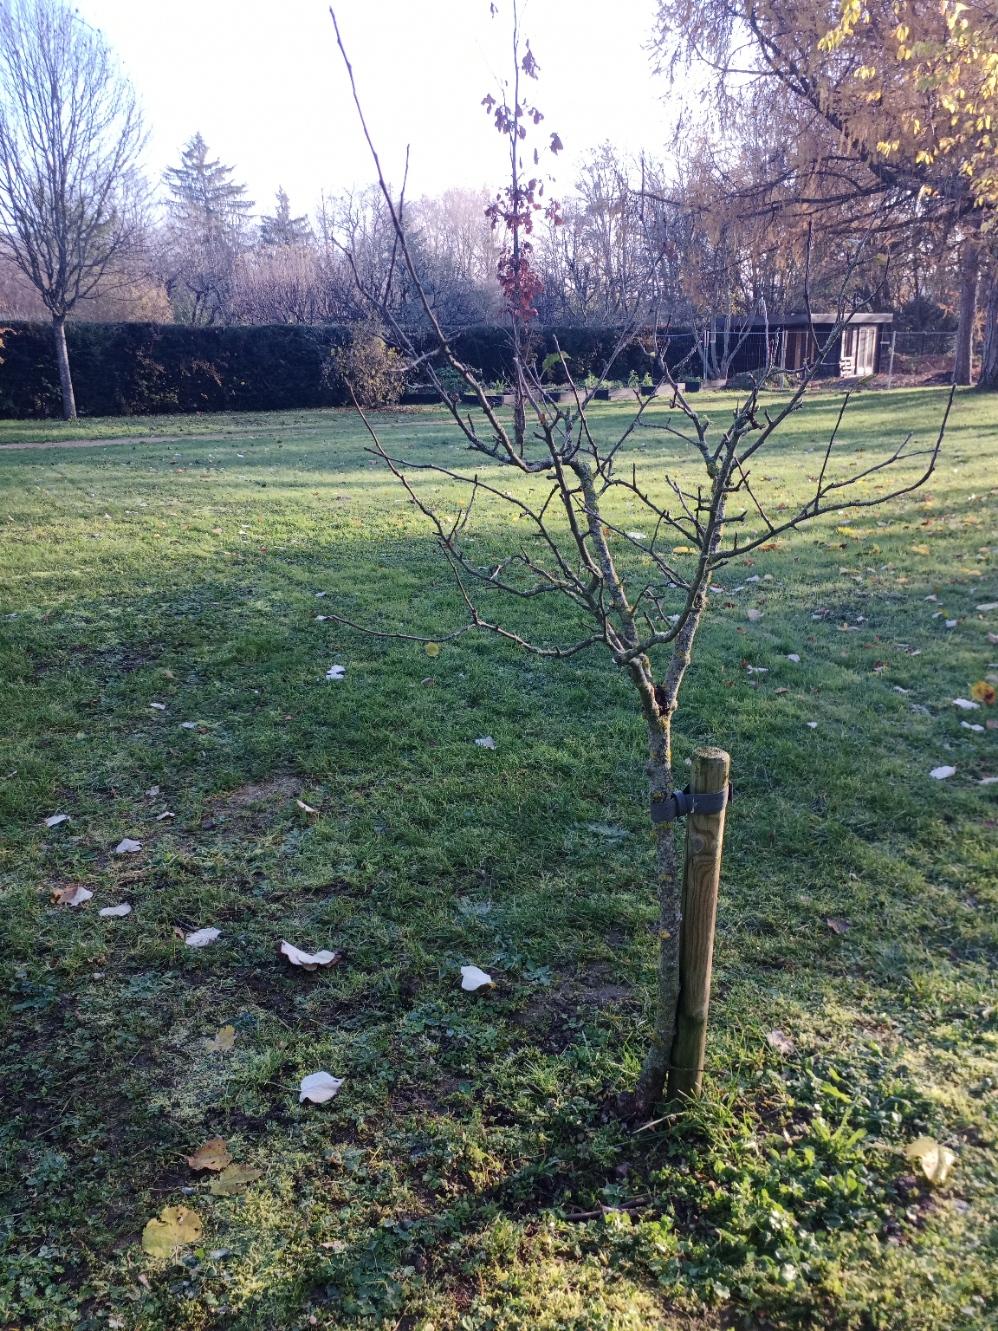 Dans le jardin anglais de Vesoul, un pommier qui aurait pu être de la variété "séminaire de Vesoul" mais s'est avéré une pomme-coing.